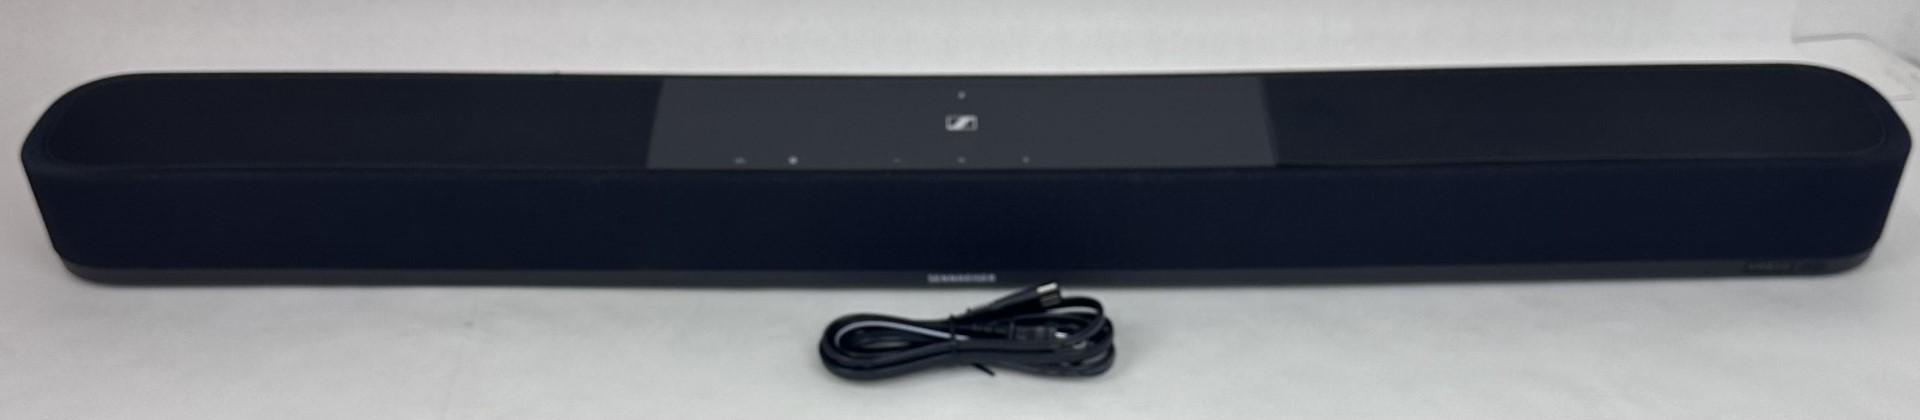 Sennheiser AMBEO Soundbar Plus SB02M - No remote control 0511